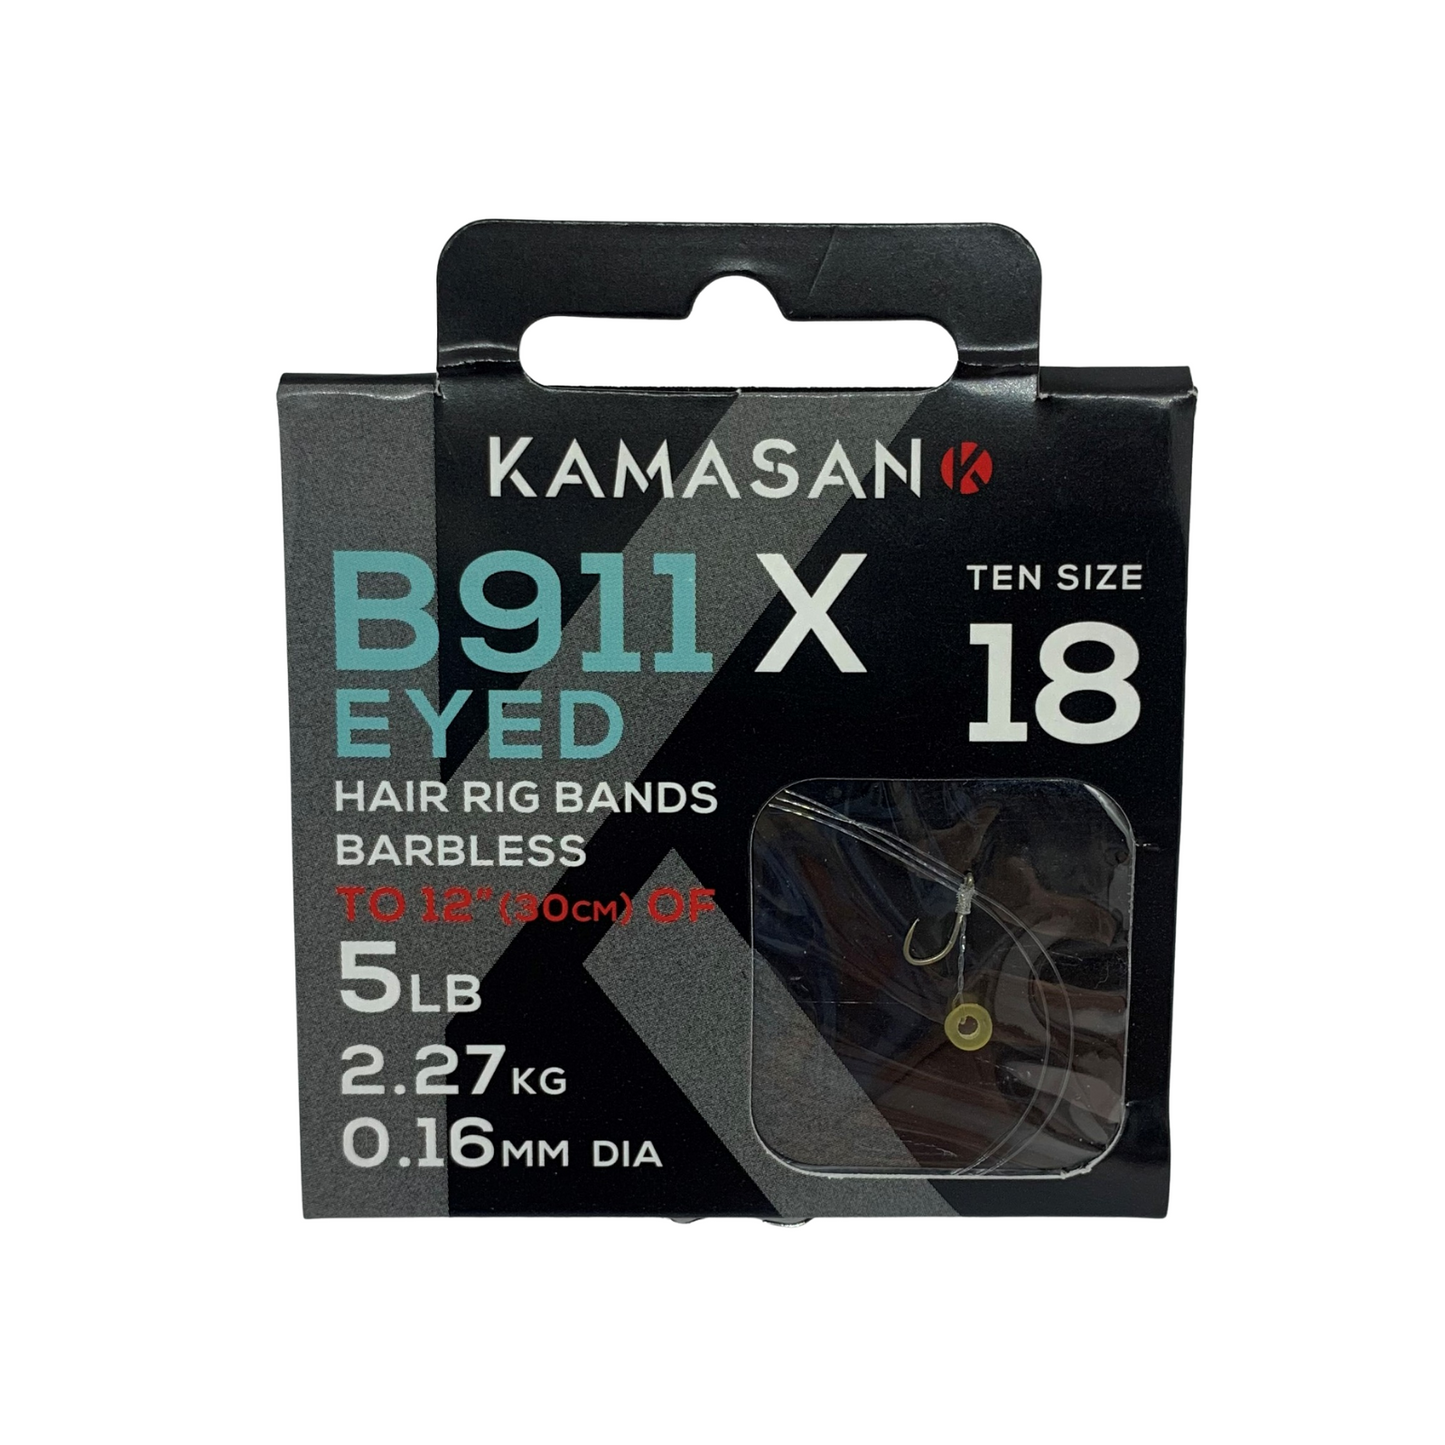 Kamasan B911X Eyed Hooks To Nylon with Bait Bands. Size 18